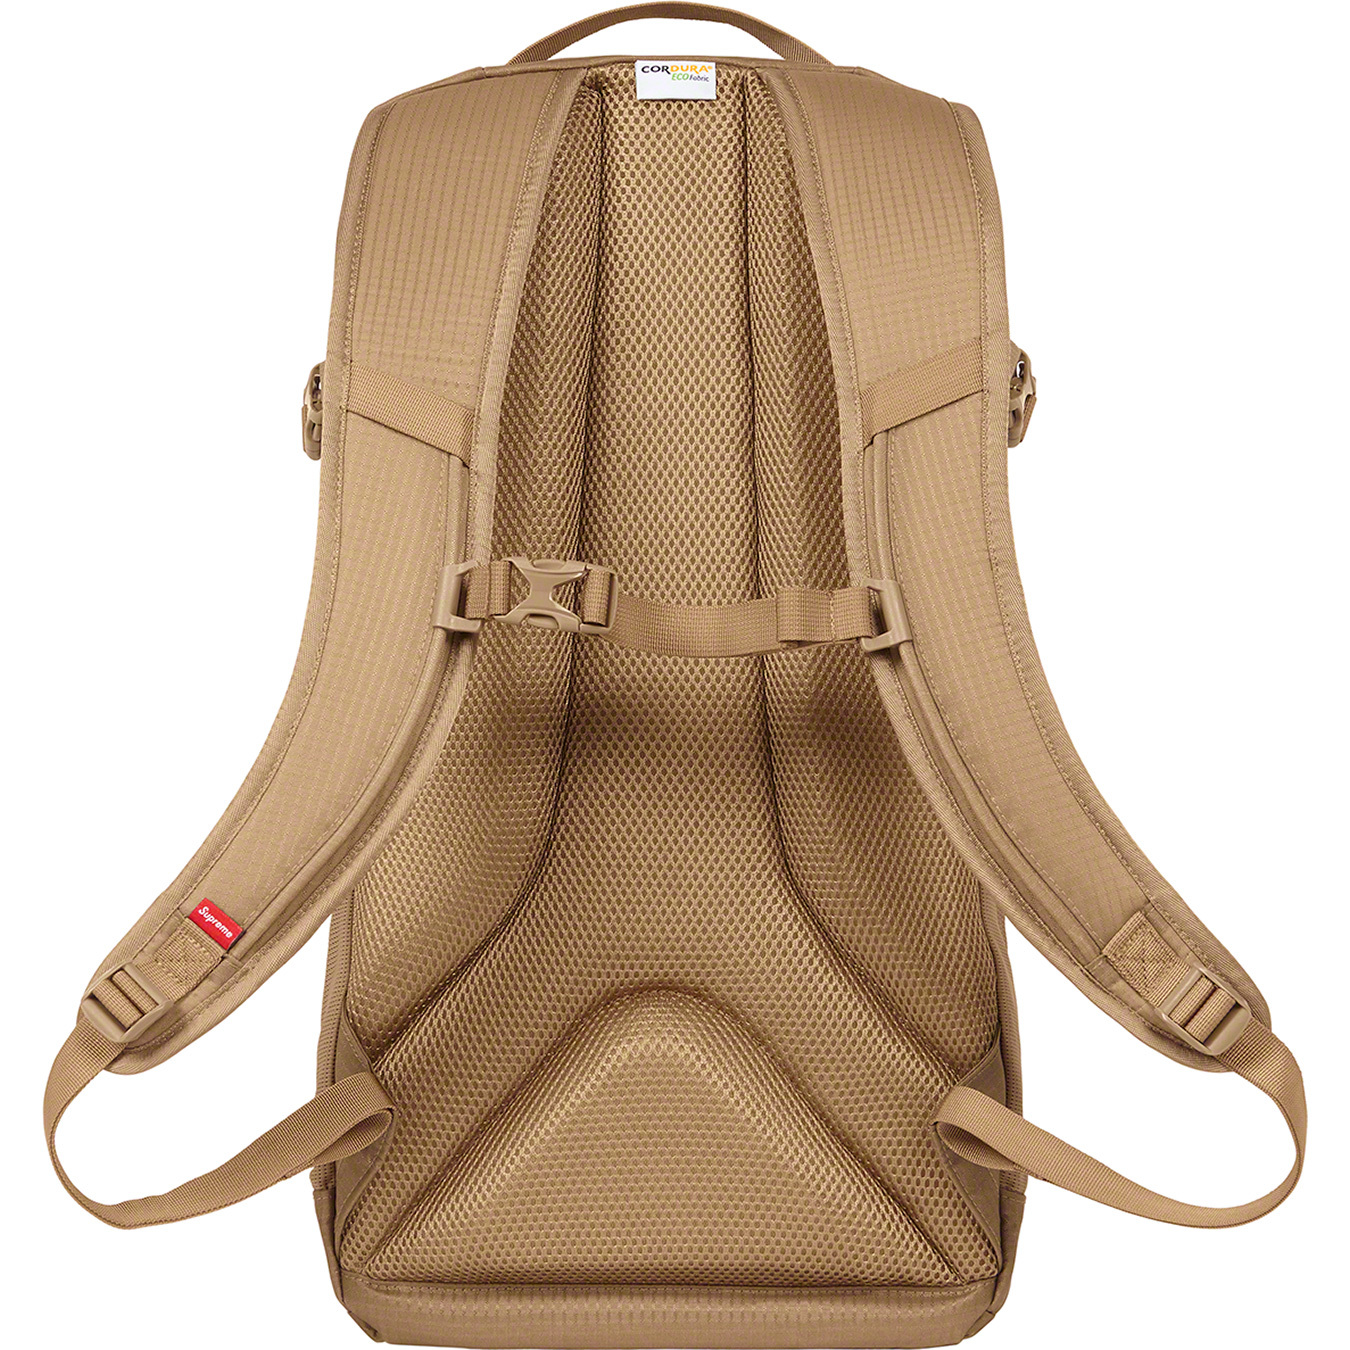 Supreme 2021 Backpack - Black Backpacks, Bags - WSPME65485